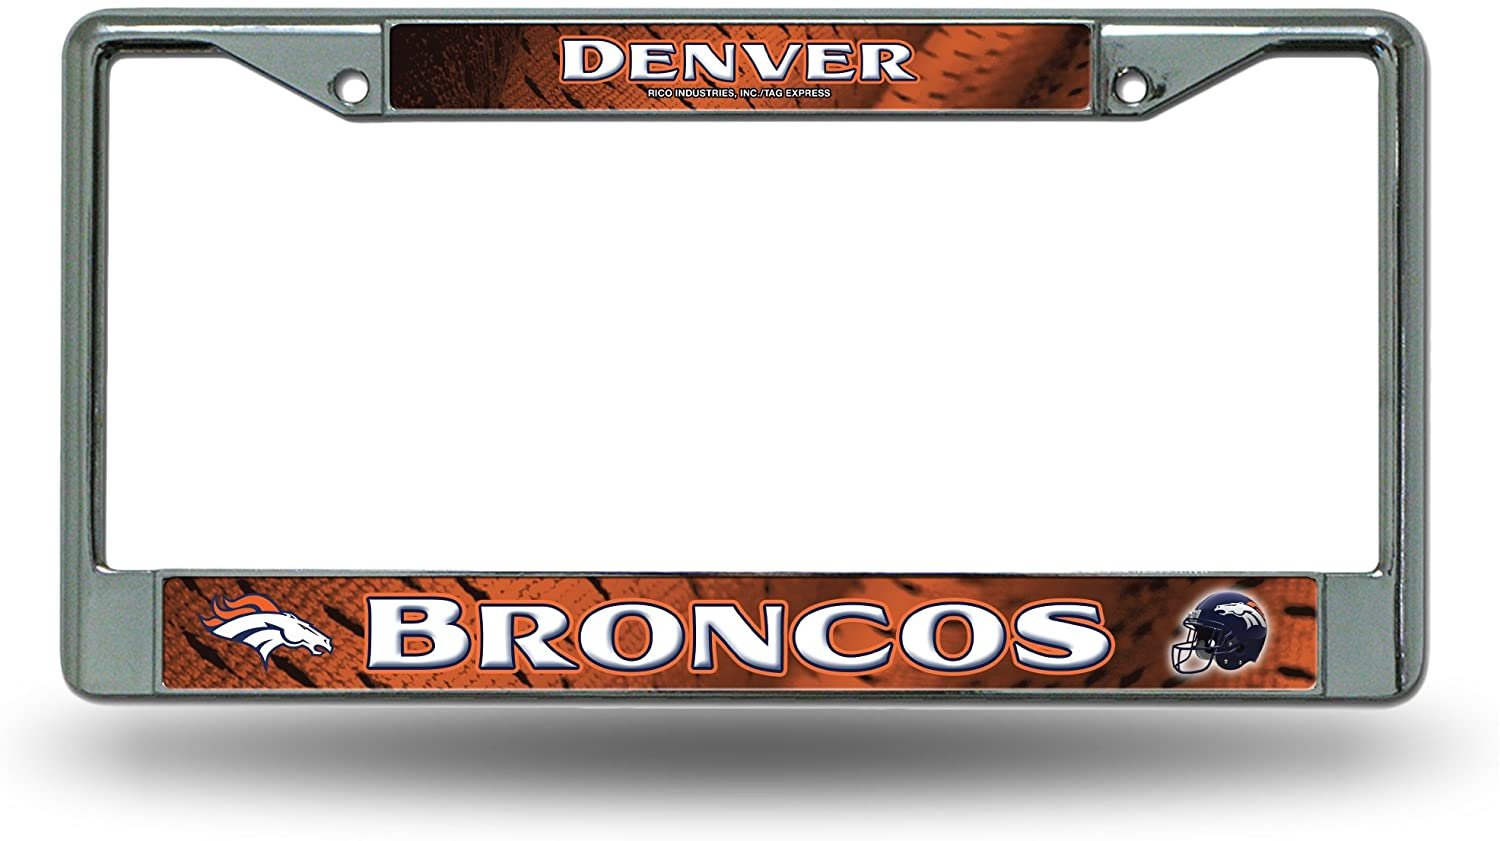 Denver Broncos Chrome Metal License Plate Frame Tag Cover, 6x12 Inch